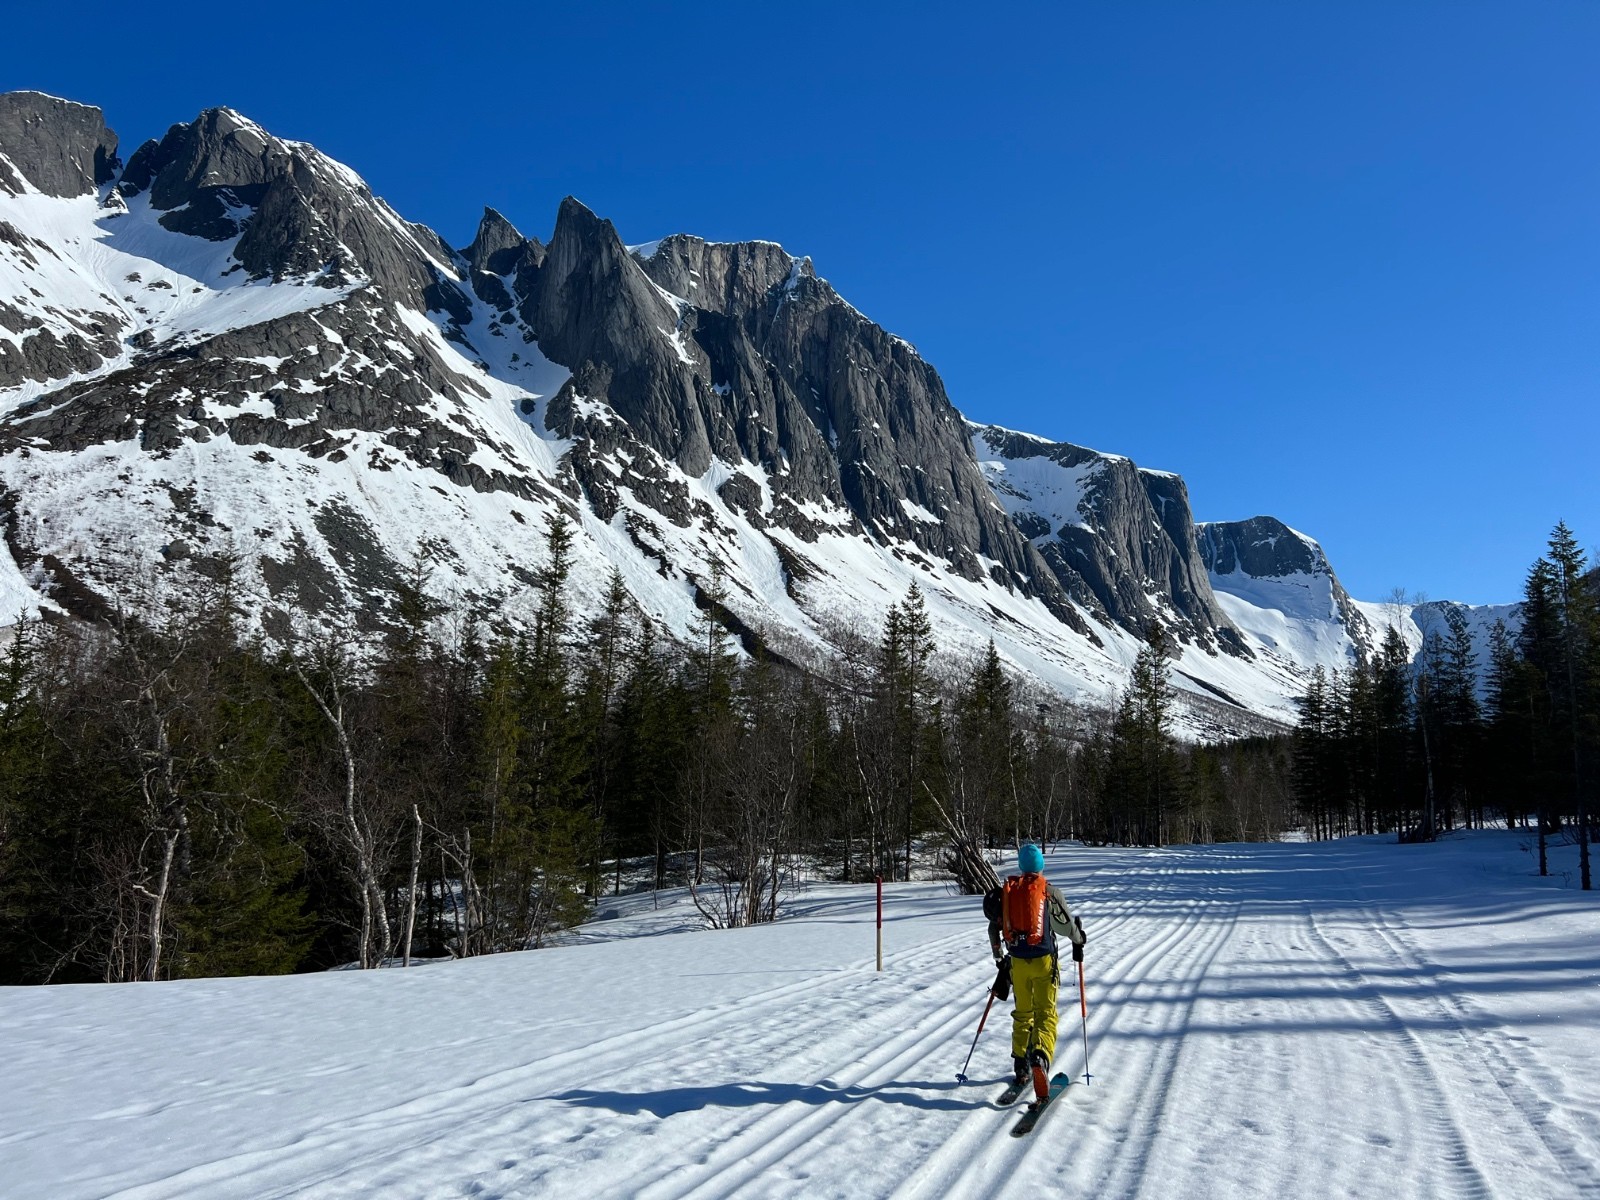  Départ skis au pied sur les pistes de ski de fond.